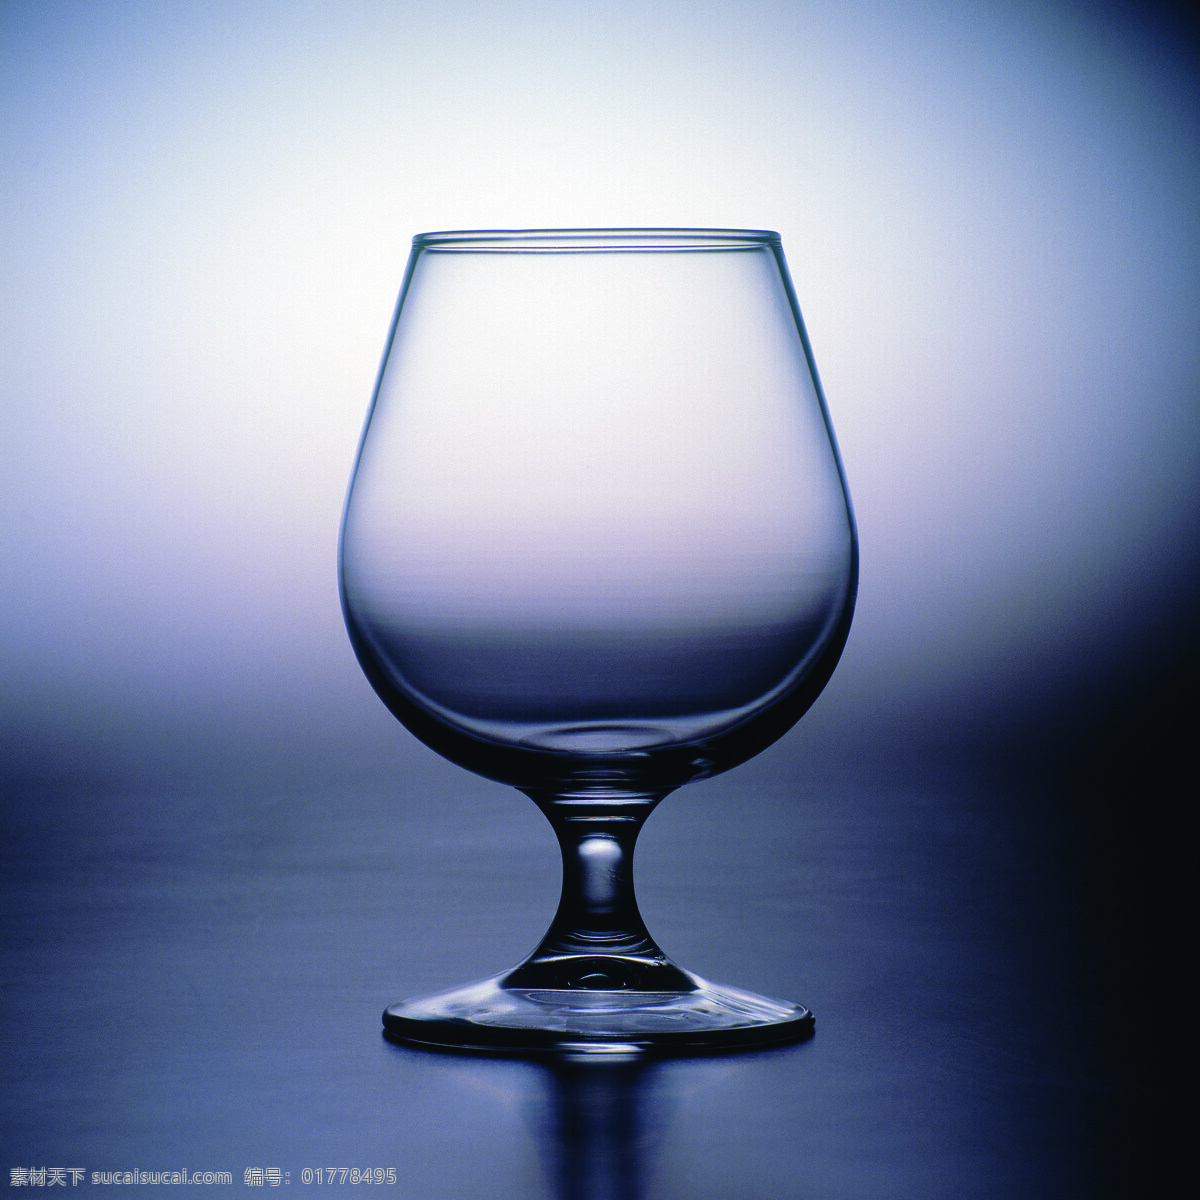 全球 首席 大百科 杯子 玻璃 玻璃杯 风格 瓶子 透明 质感 风景 生活 旅游餐饮